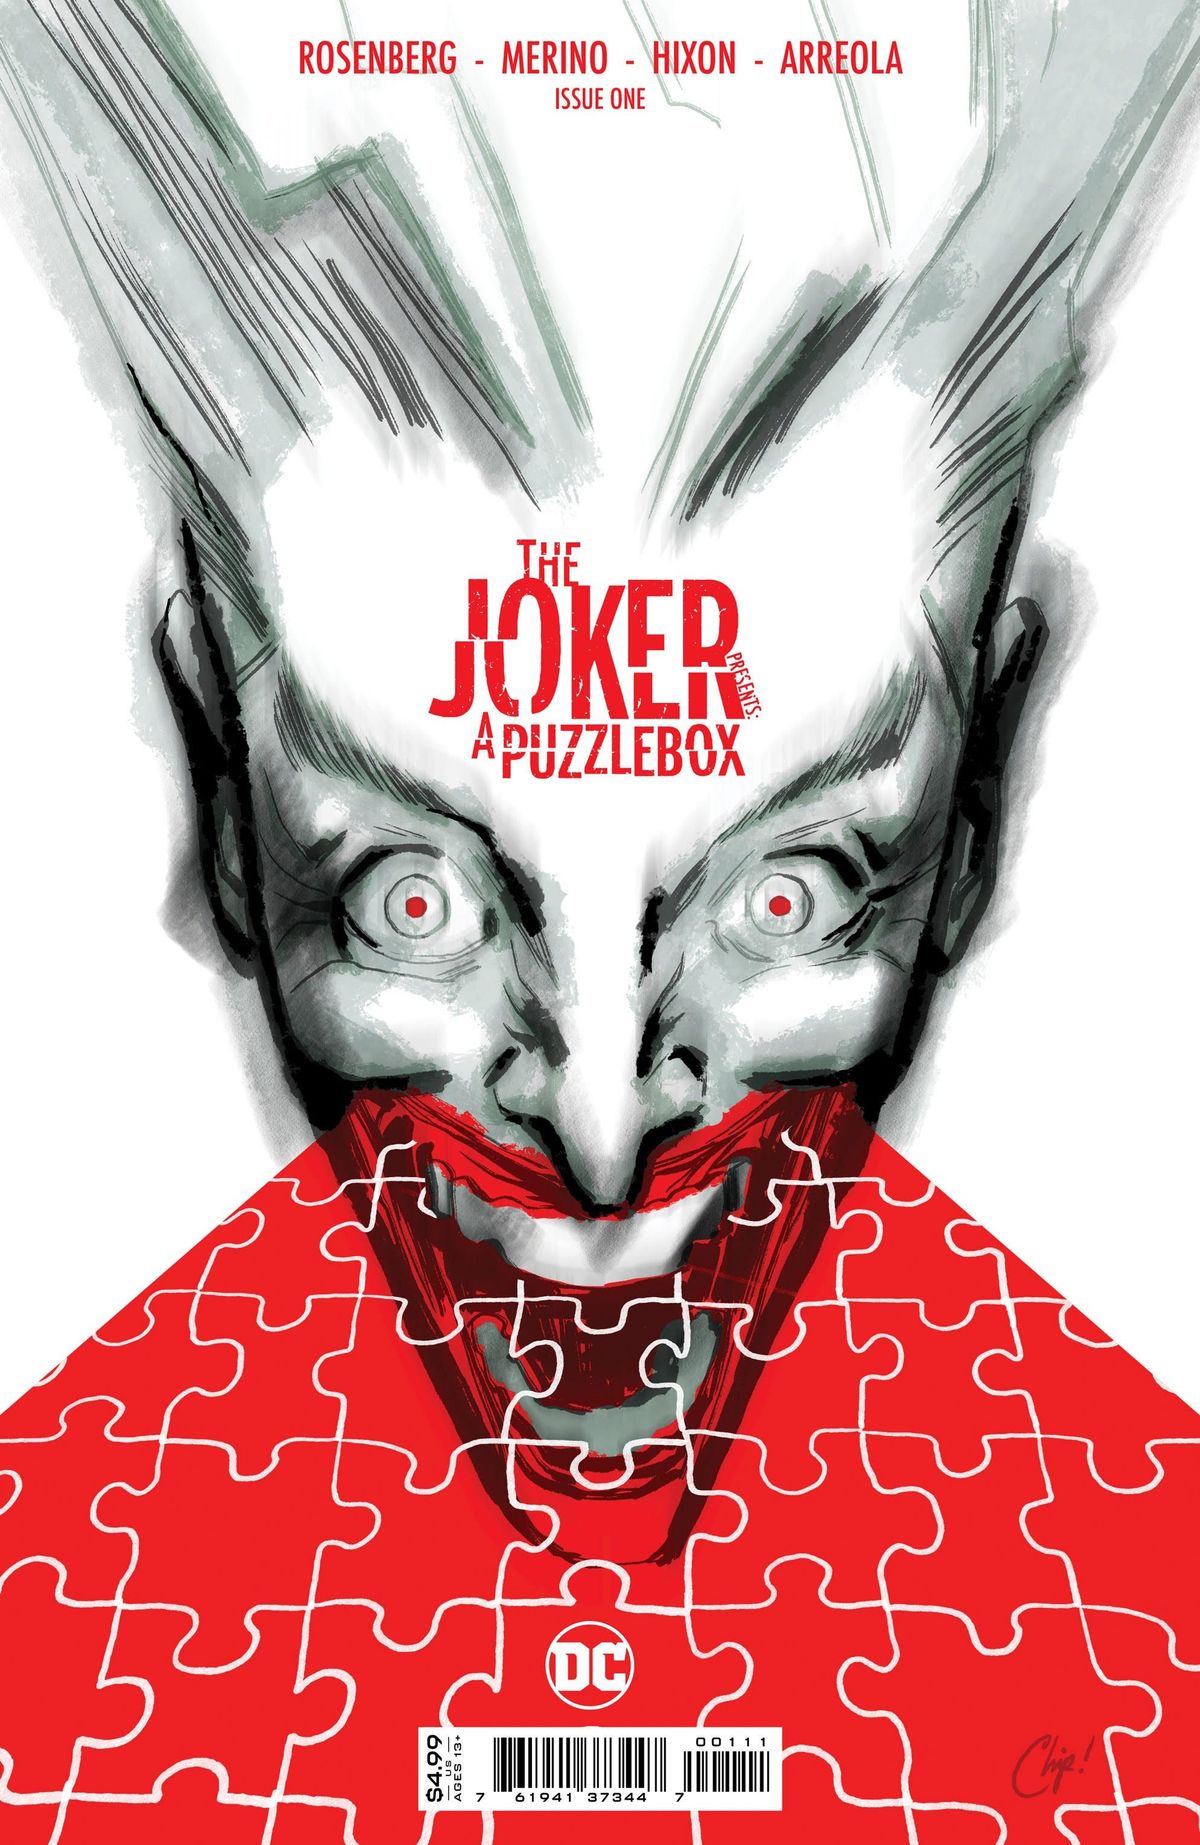 Η DC ανακοινώνει το Murder Mystery Series με τον Joker ως το Star Witness